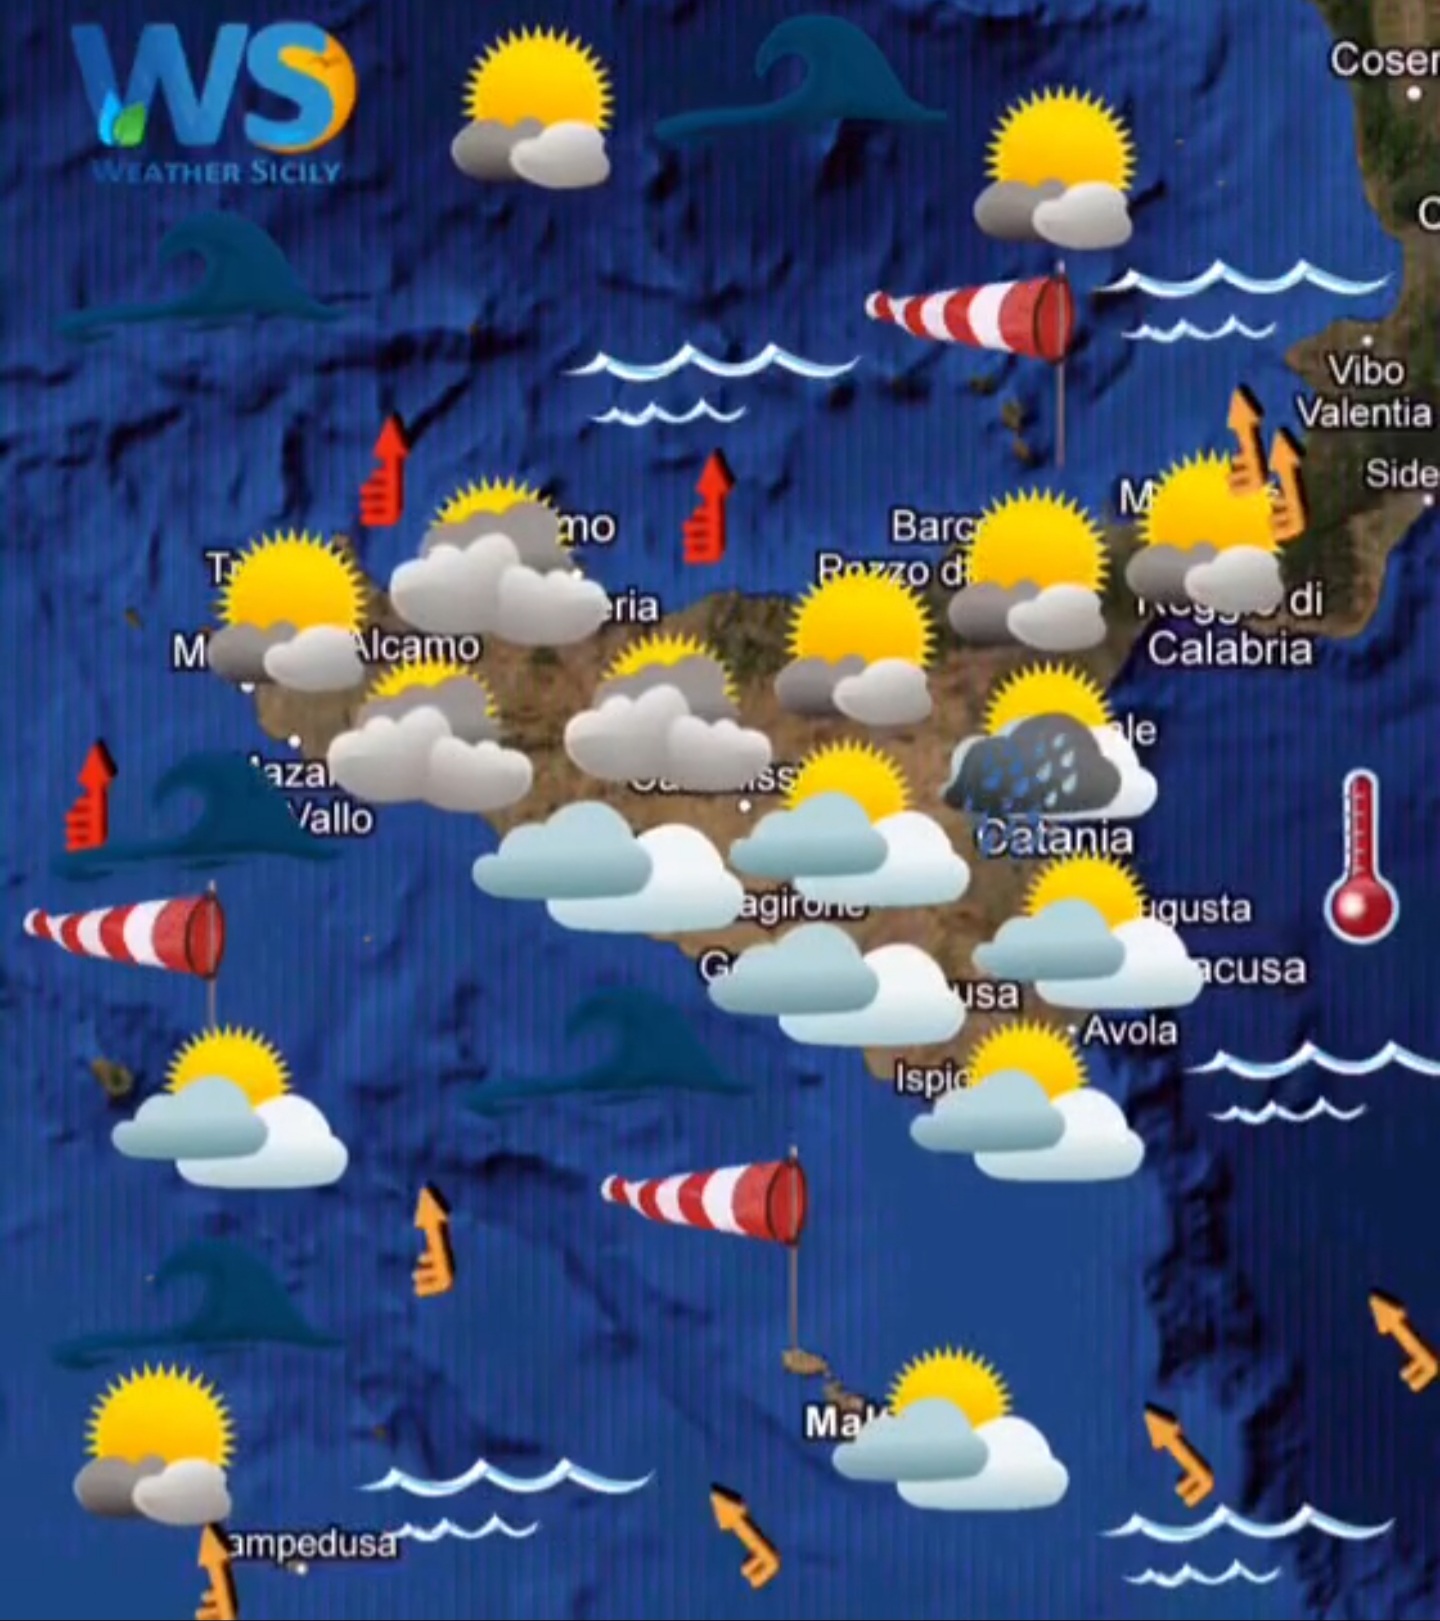 Meteo Sicilia: ultime ore di variabilità. Da domani lieve aumento termico.